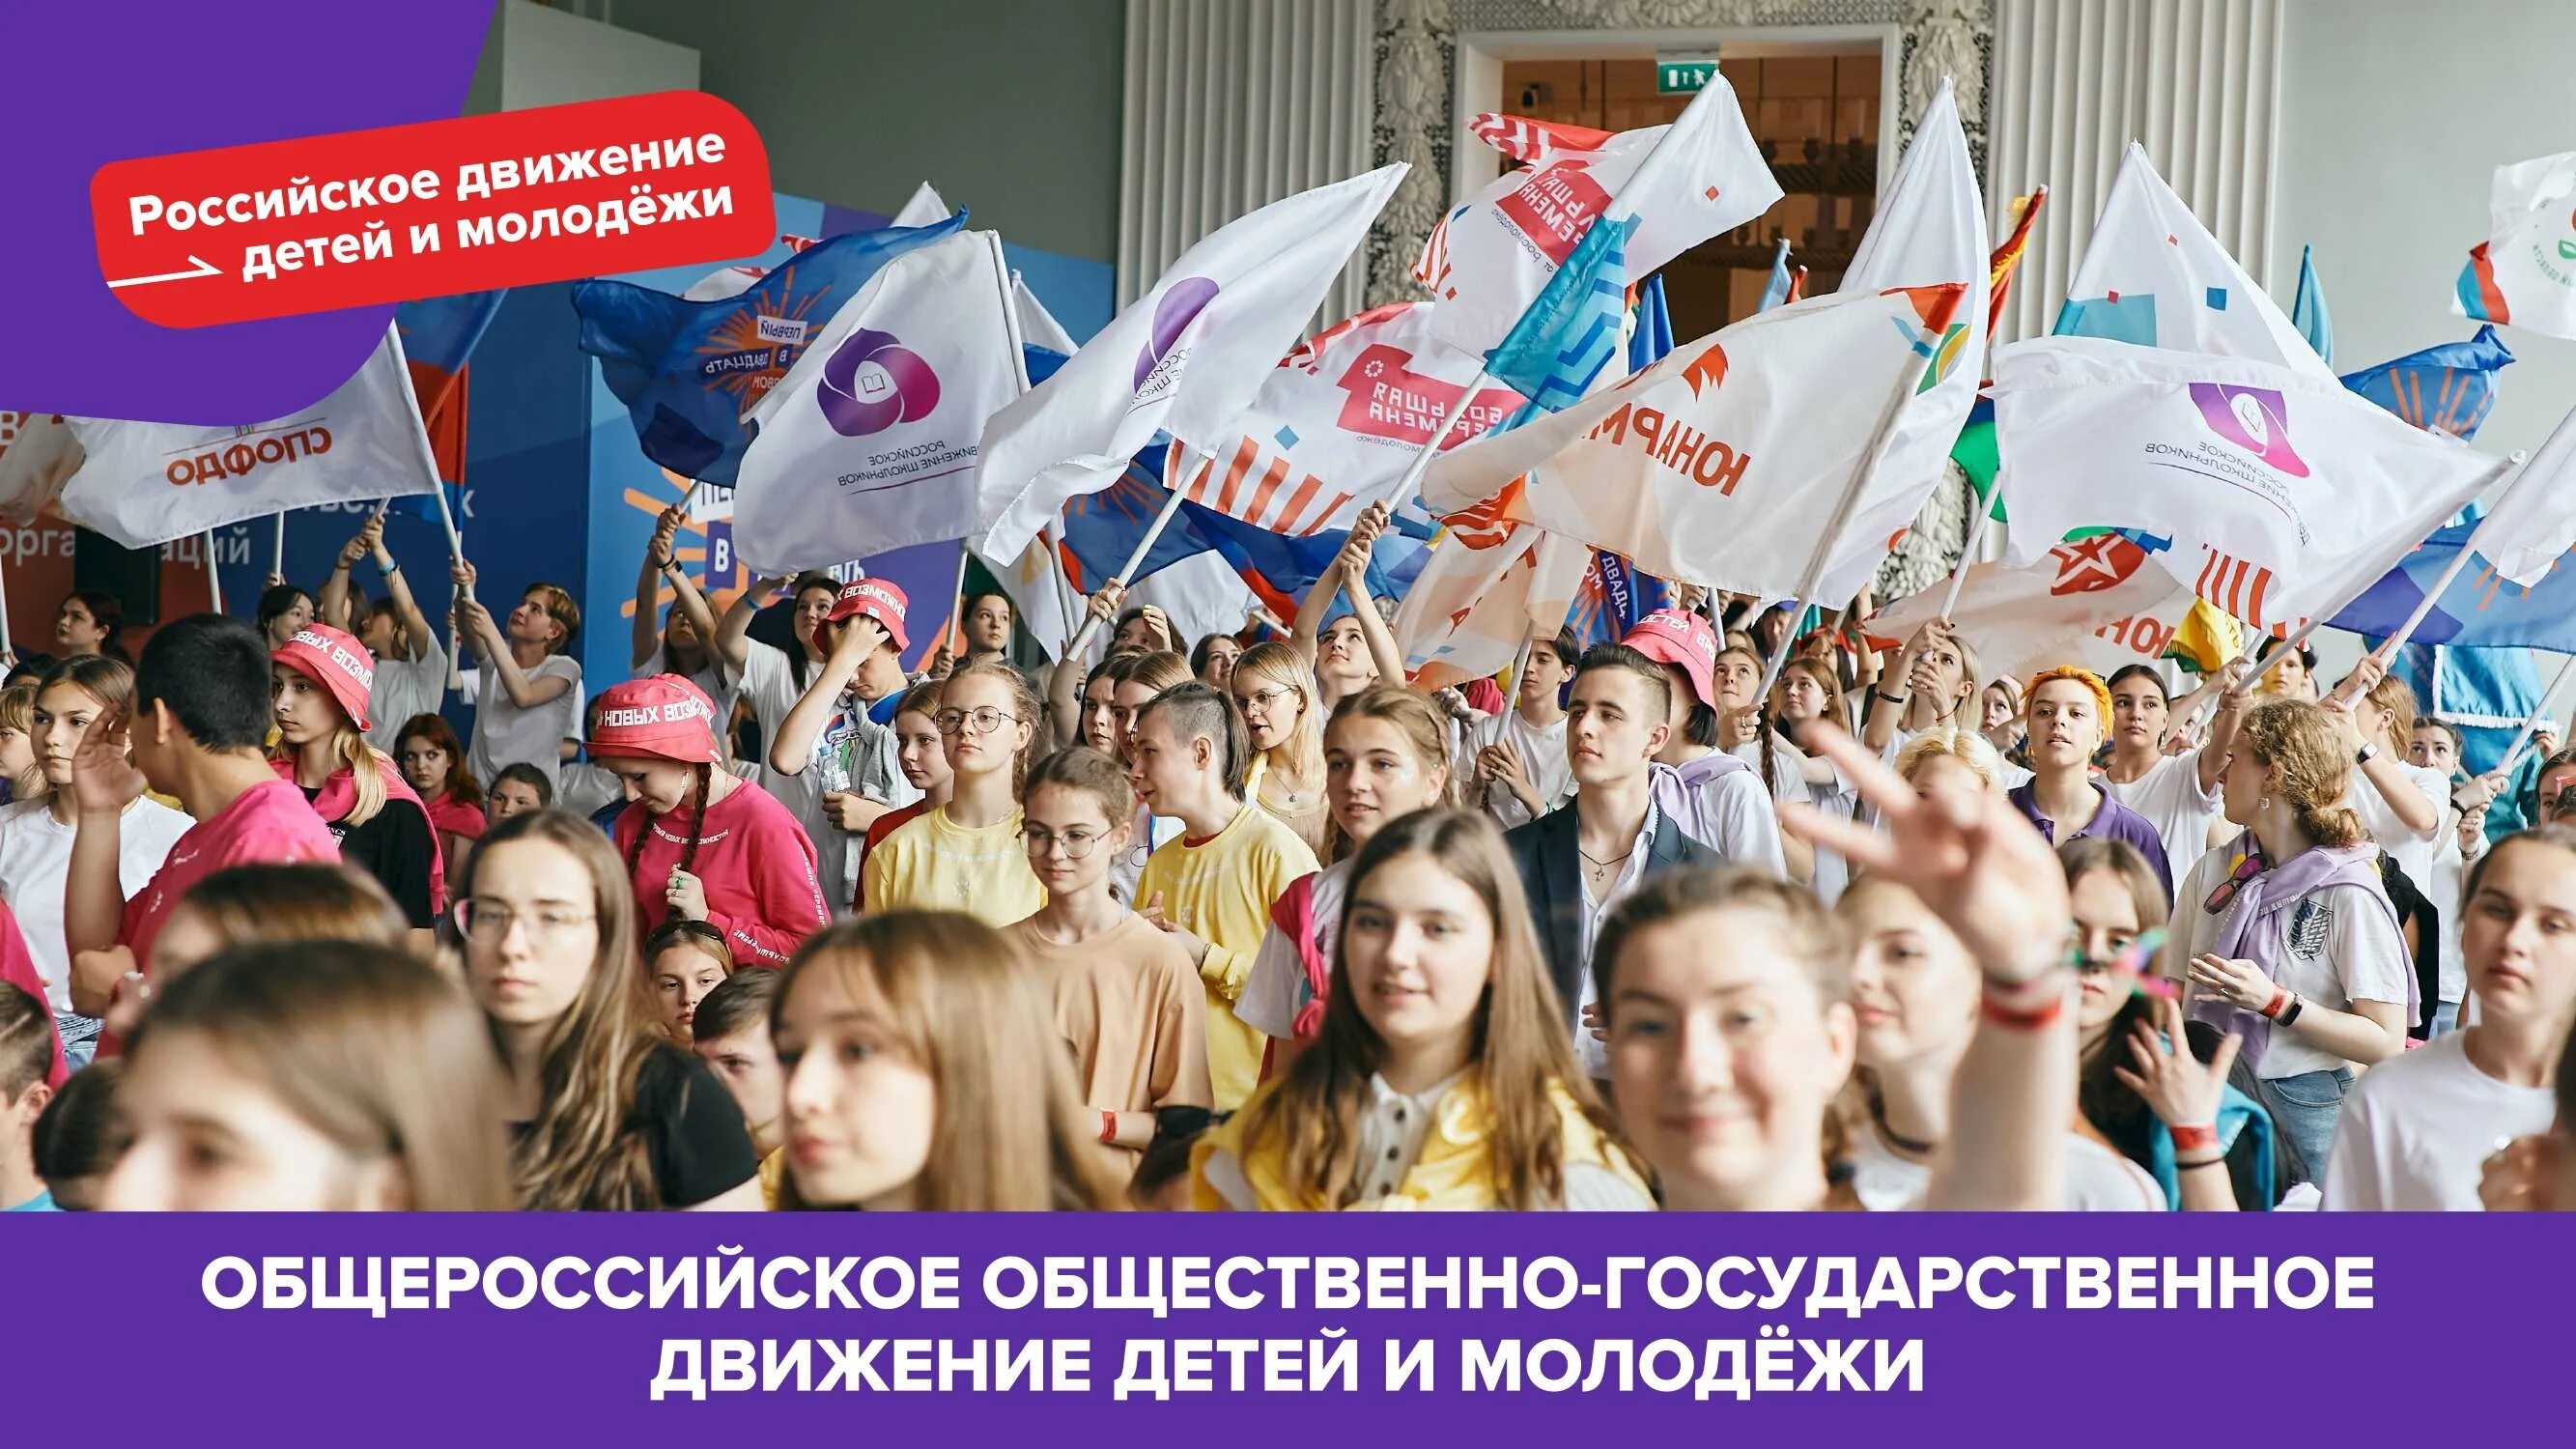 Российское движение детей и молодежи. Россицское движение детей и молодёжи. Российское движение детей и молодёжи движение. Российское движение детей и молодежи движение первых.